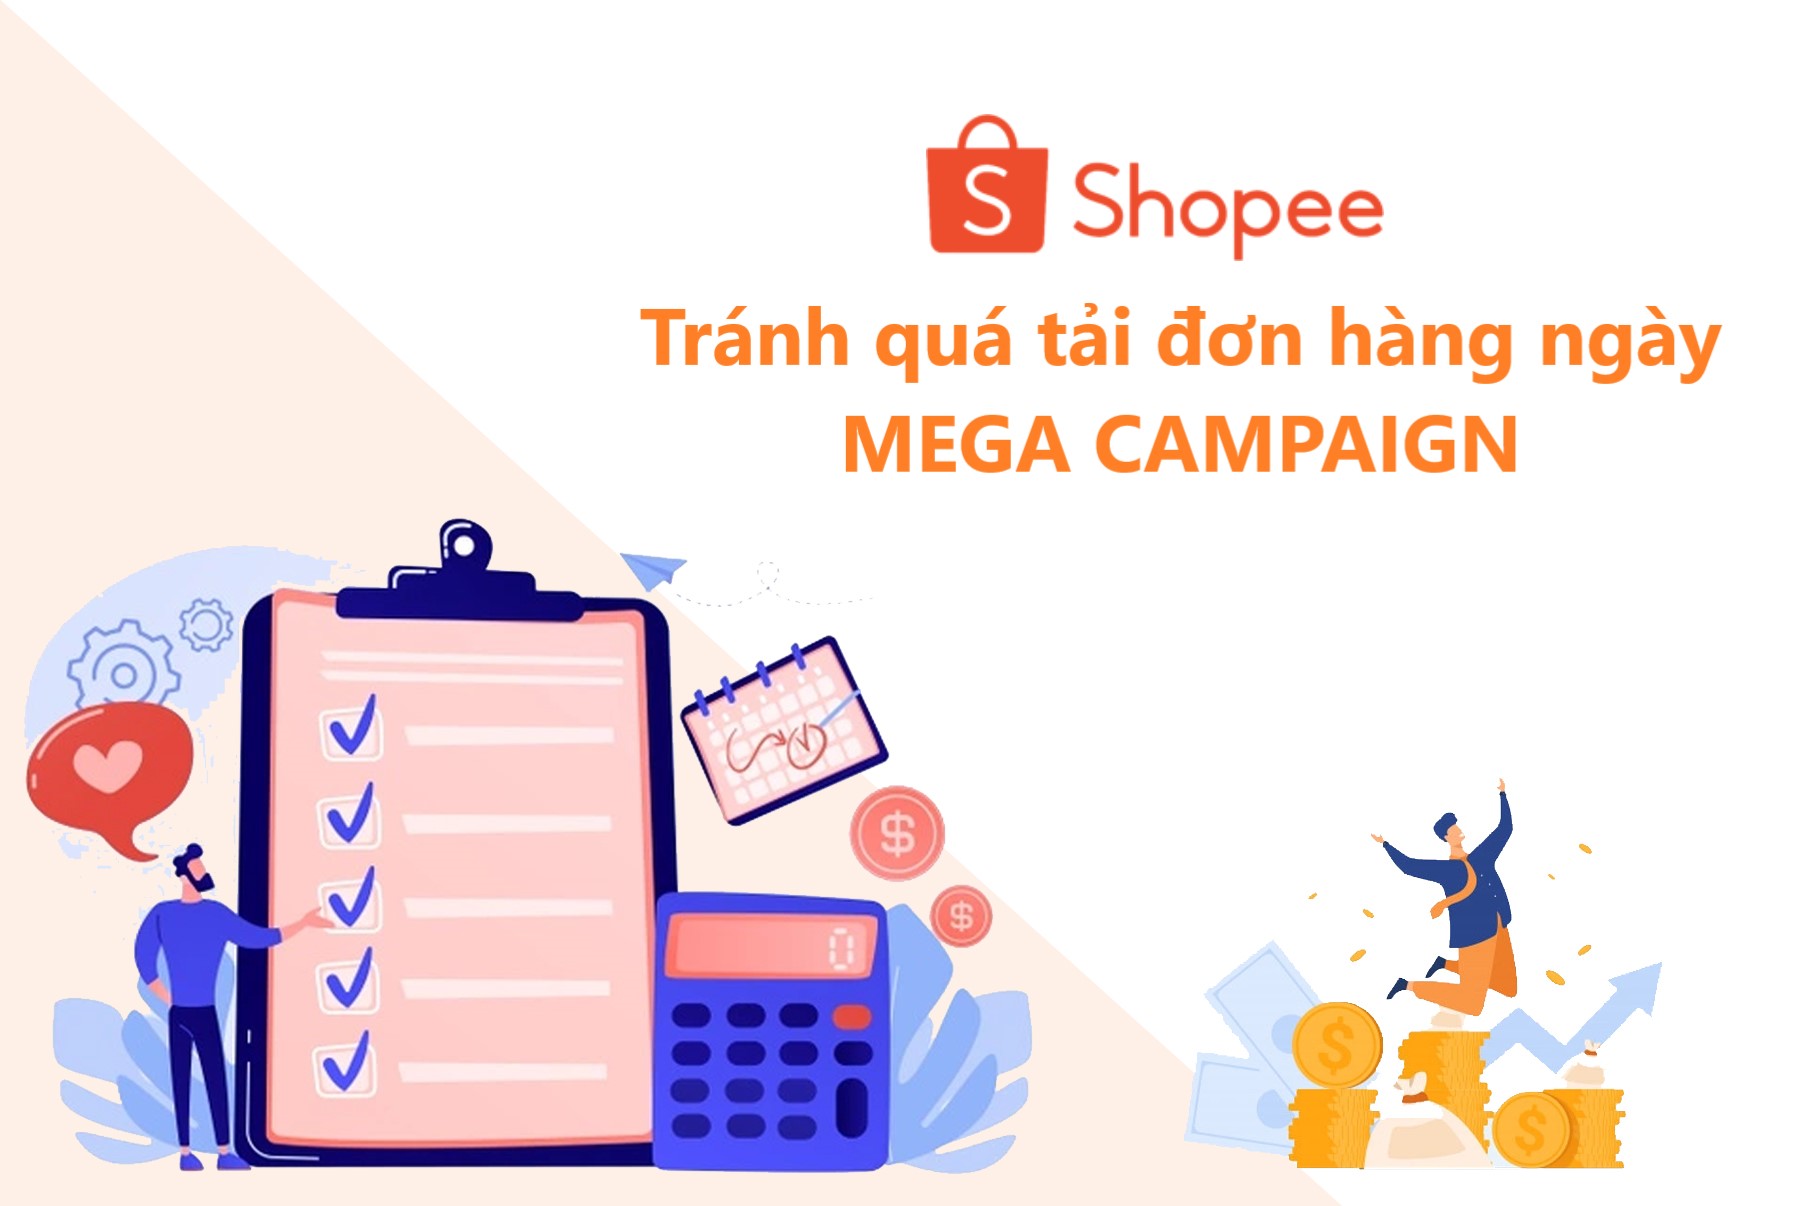 Cần làm gì để tránh quá tải đơn hàng ngày Mega Campaign trên Shopee?